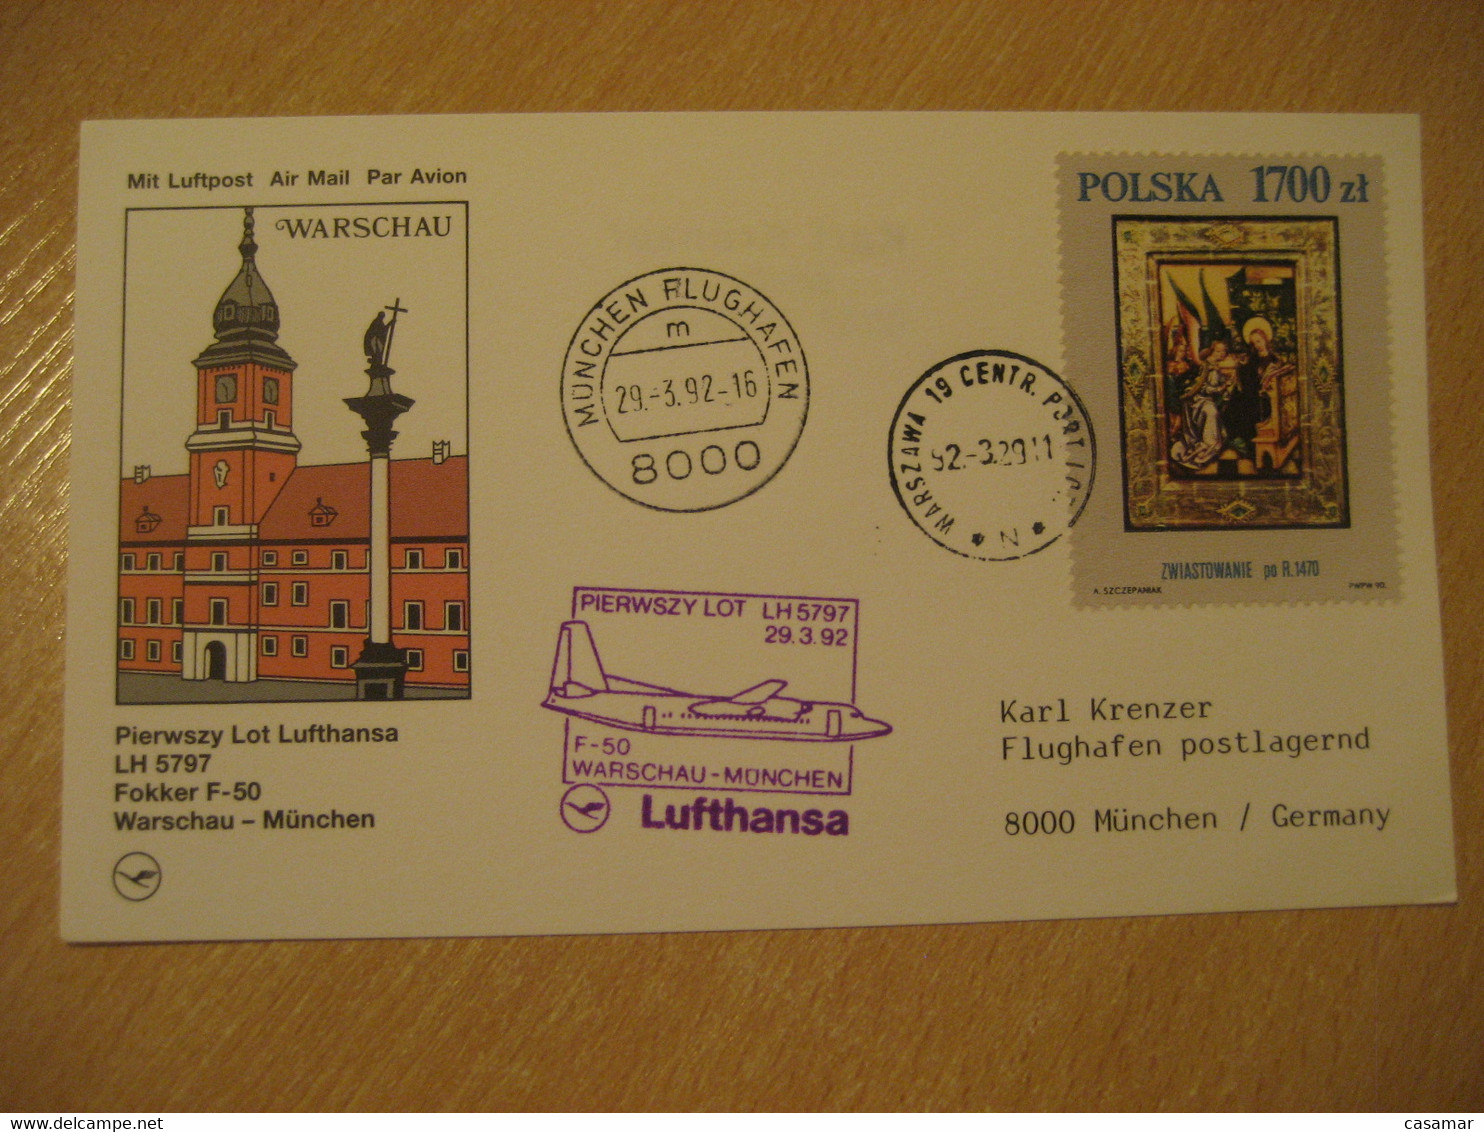 WARSZAWA Warsaw Munich 1992 Lufthansa Airlines Airline Fokker F-50 First Flight Violet Cancel Card POLAND GERMANY - Vliegtuigen